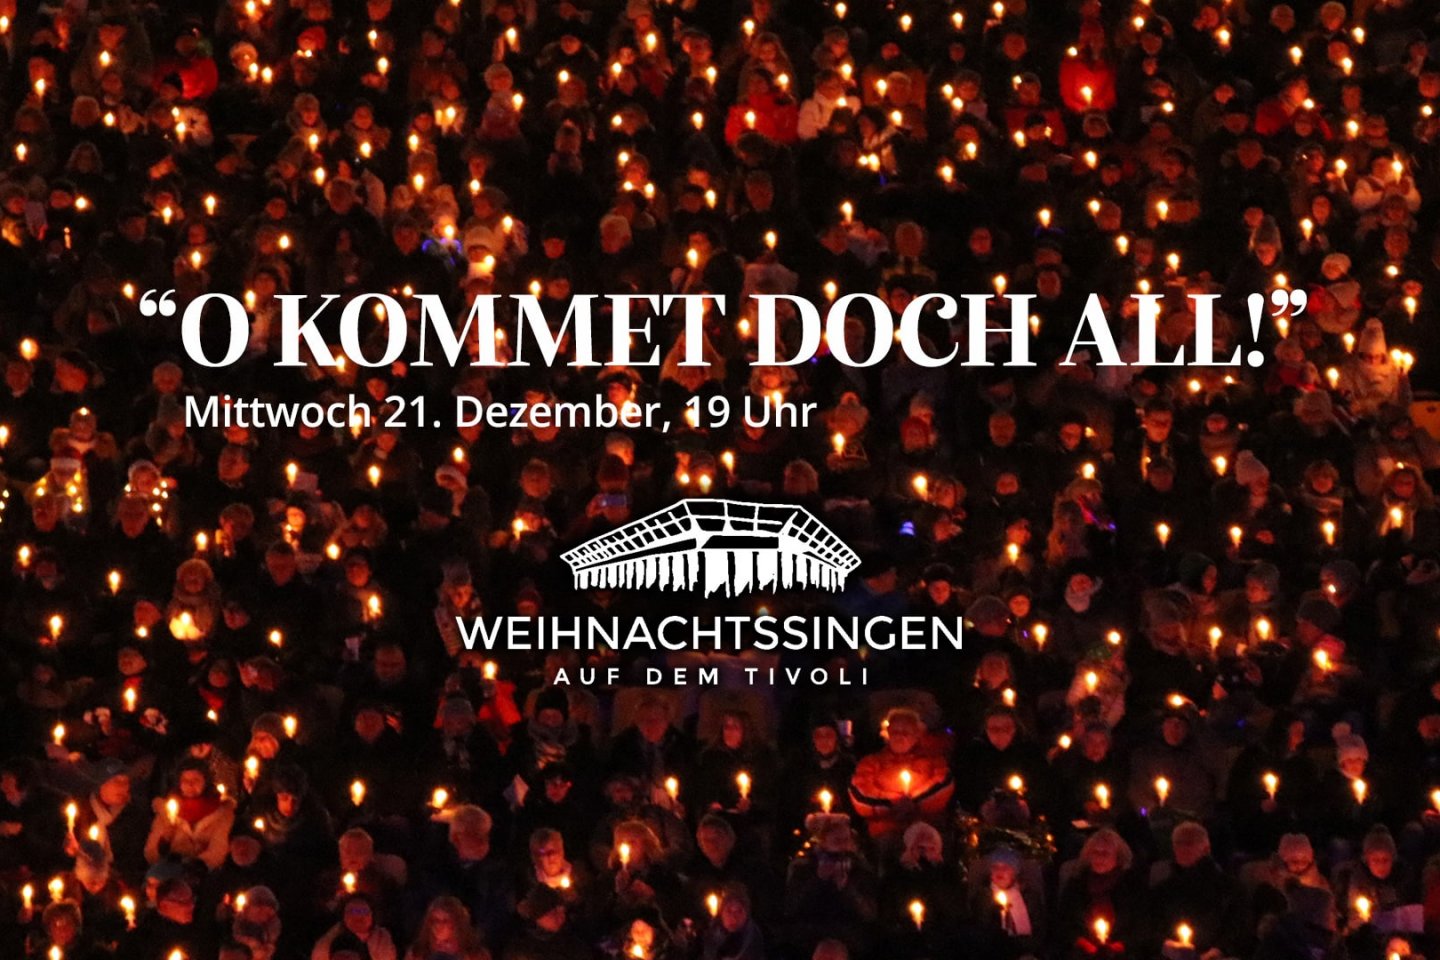 Das Weihnachtssingen auf dem Aachener Tivoli findet am Mittwoch, den 21. Dezember 2022 statt.